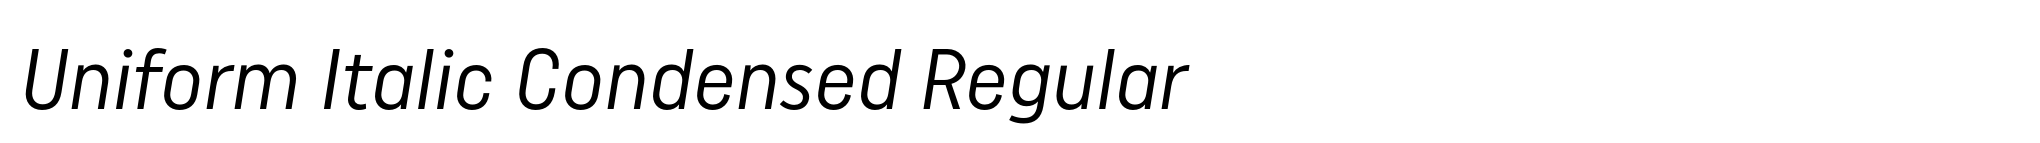 Uniform Italic Condensed Regular image